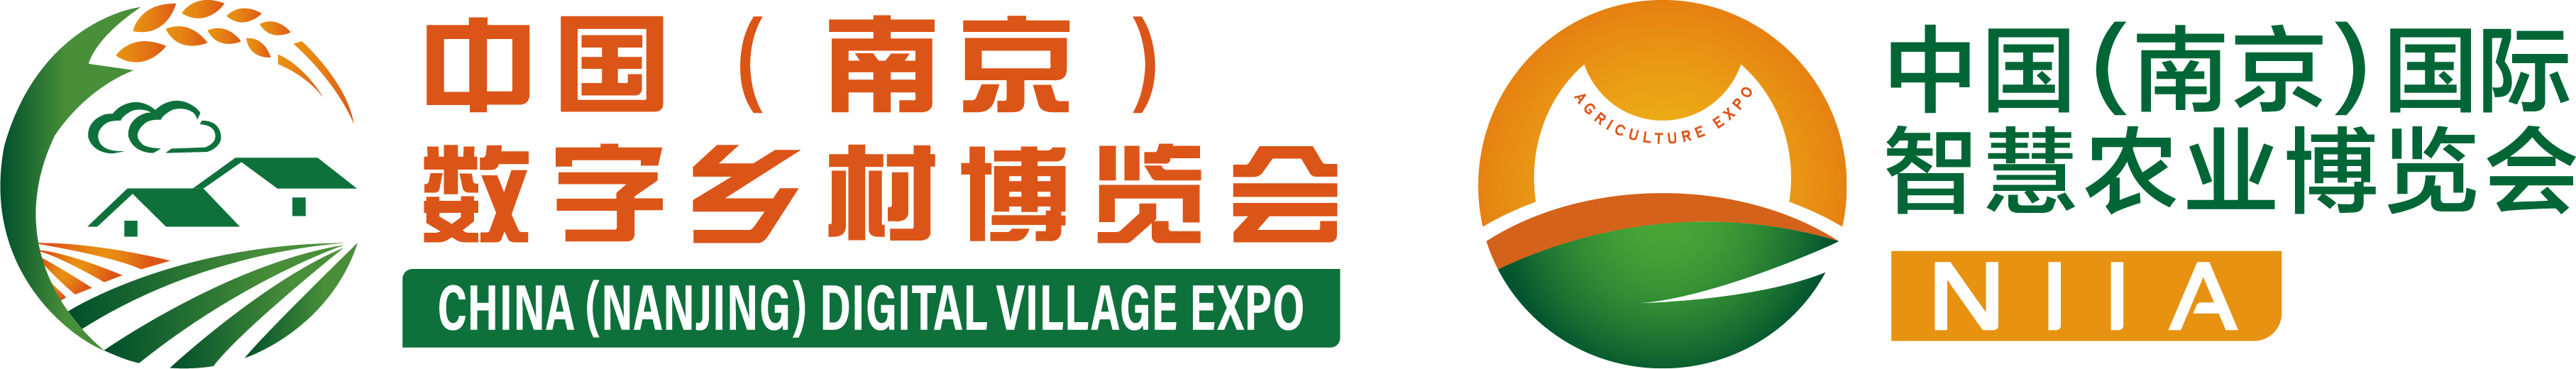 中国（南京）数字乡村博览会暨中国（南京）国际智慧农业博览会